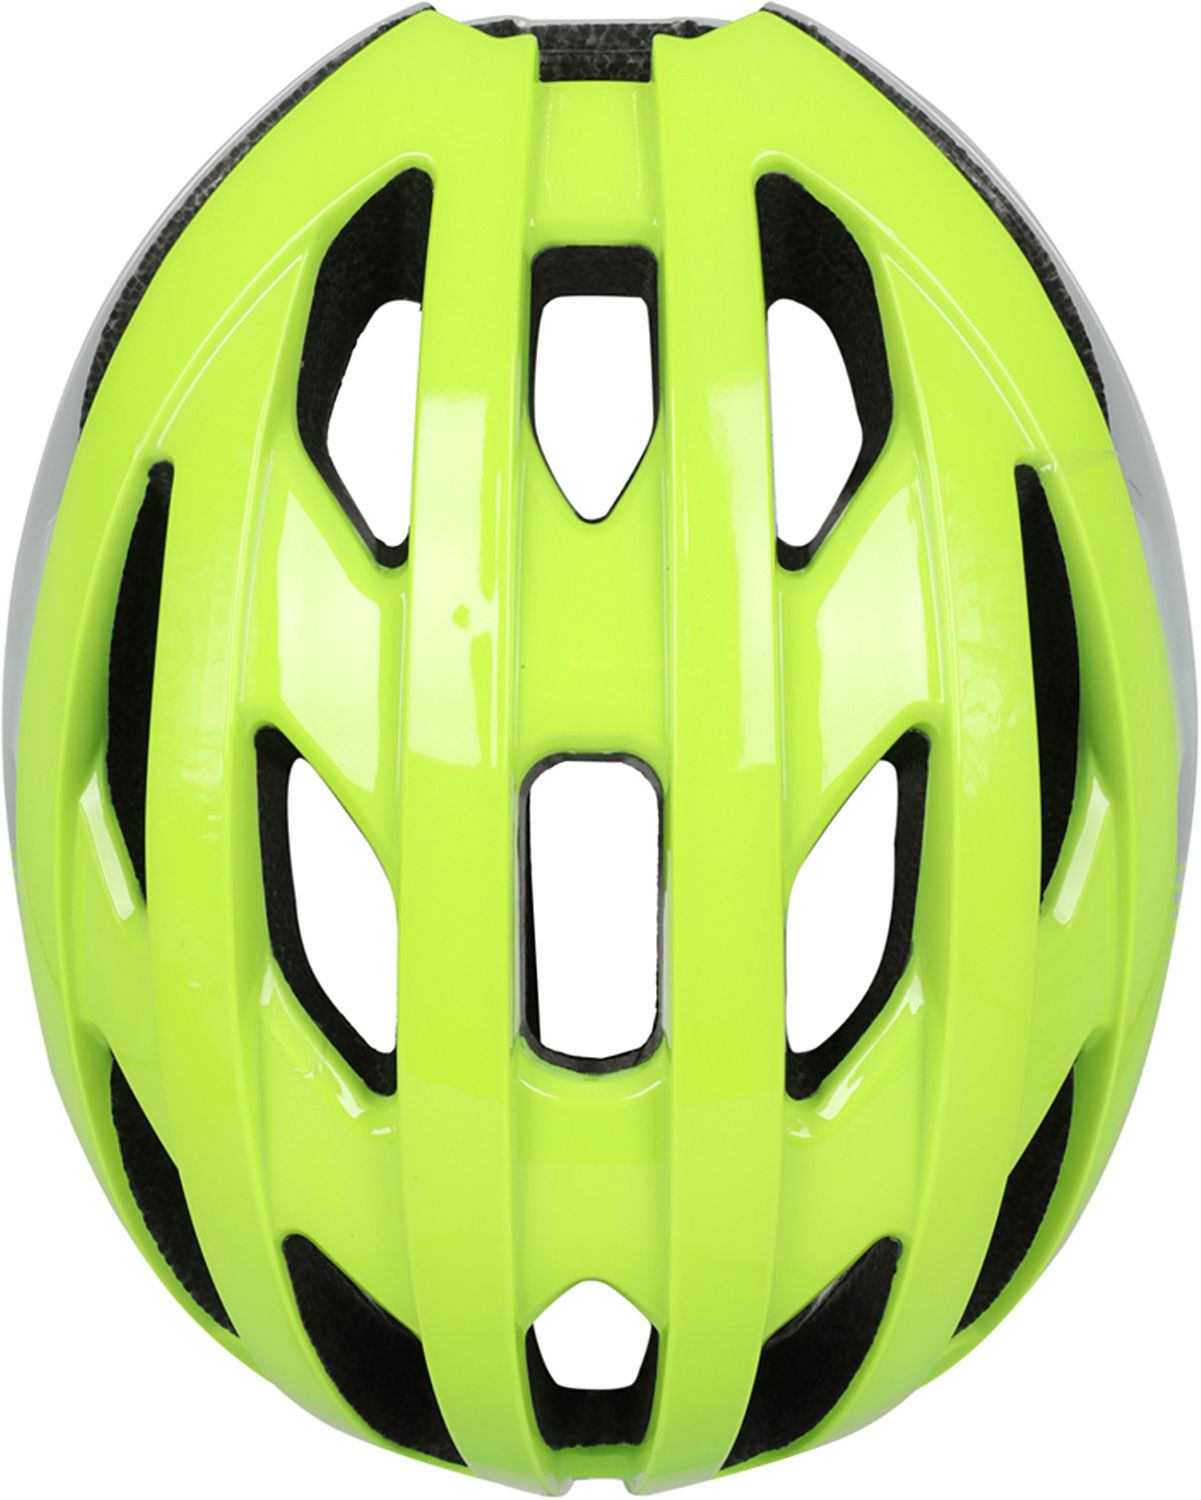 Велошлем Oxford Raven Road Helmet Fluo